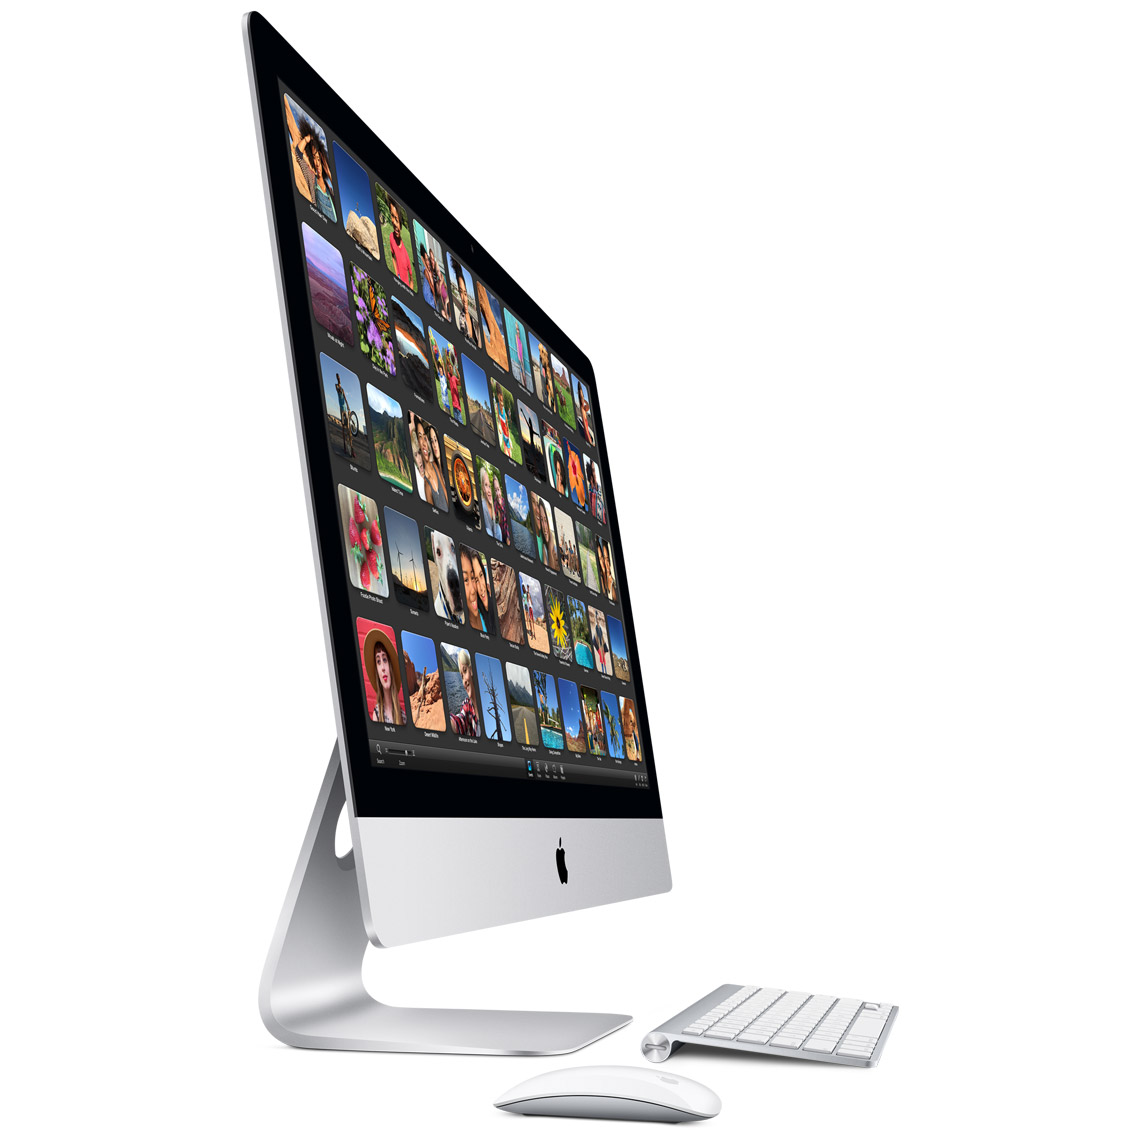 Mac OS X Yosemite Free Download - Get Into PC